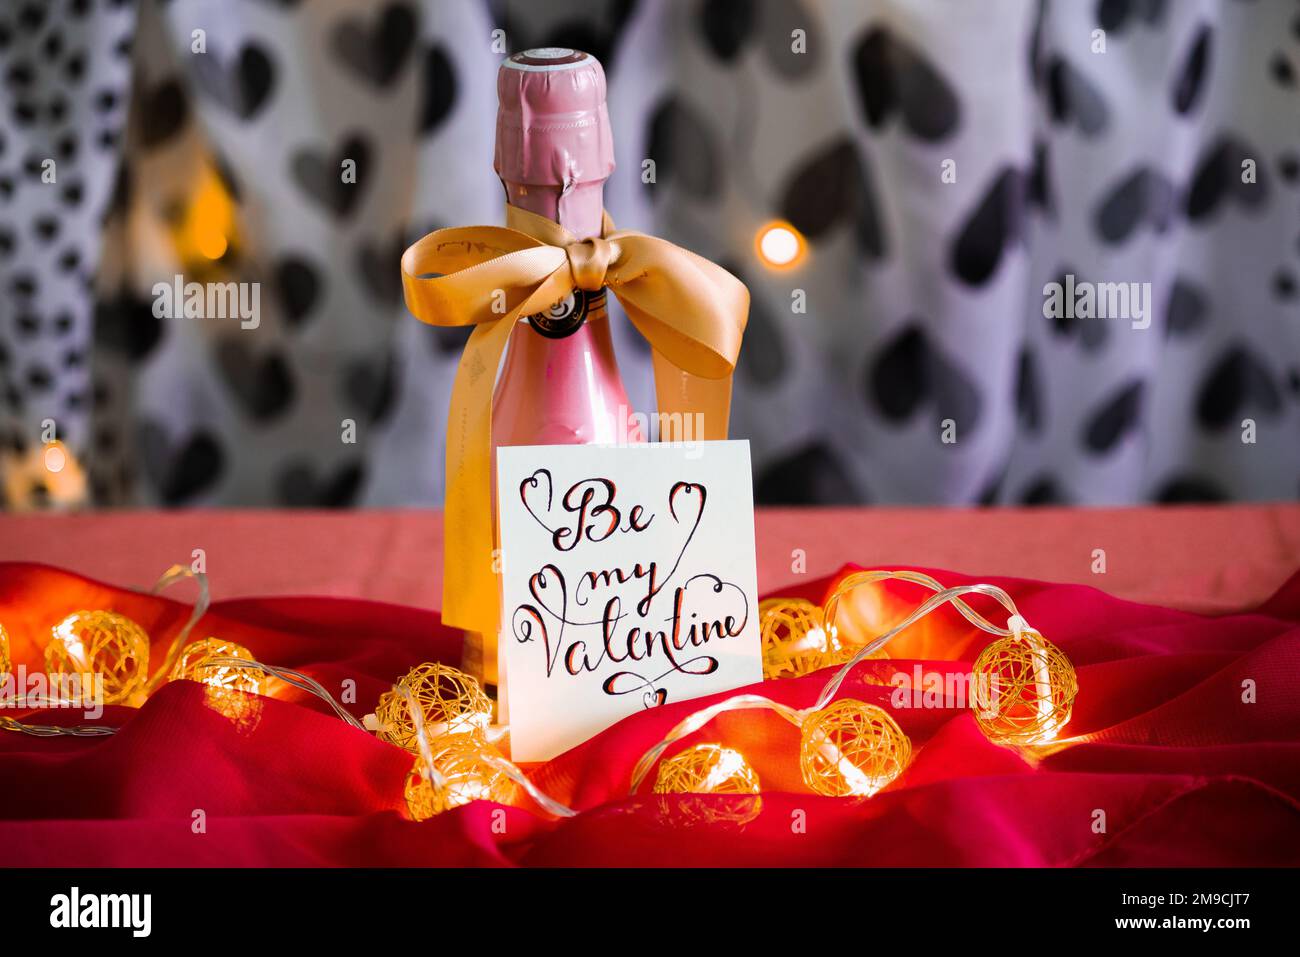 Valentinstag Dekorationsidee, rosafarbener Champagner mit goldenem Band und Notiz auf einem romantischen rosafarbenen Tischtuch in Schwarz und Weiß mit herzförmigem Hintergrund Stockfoto